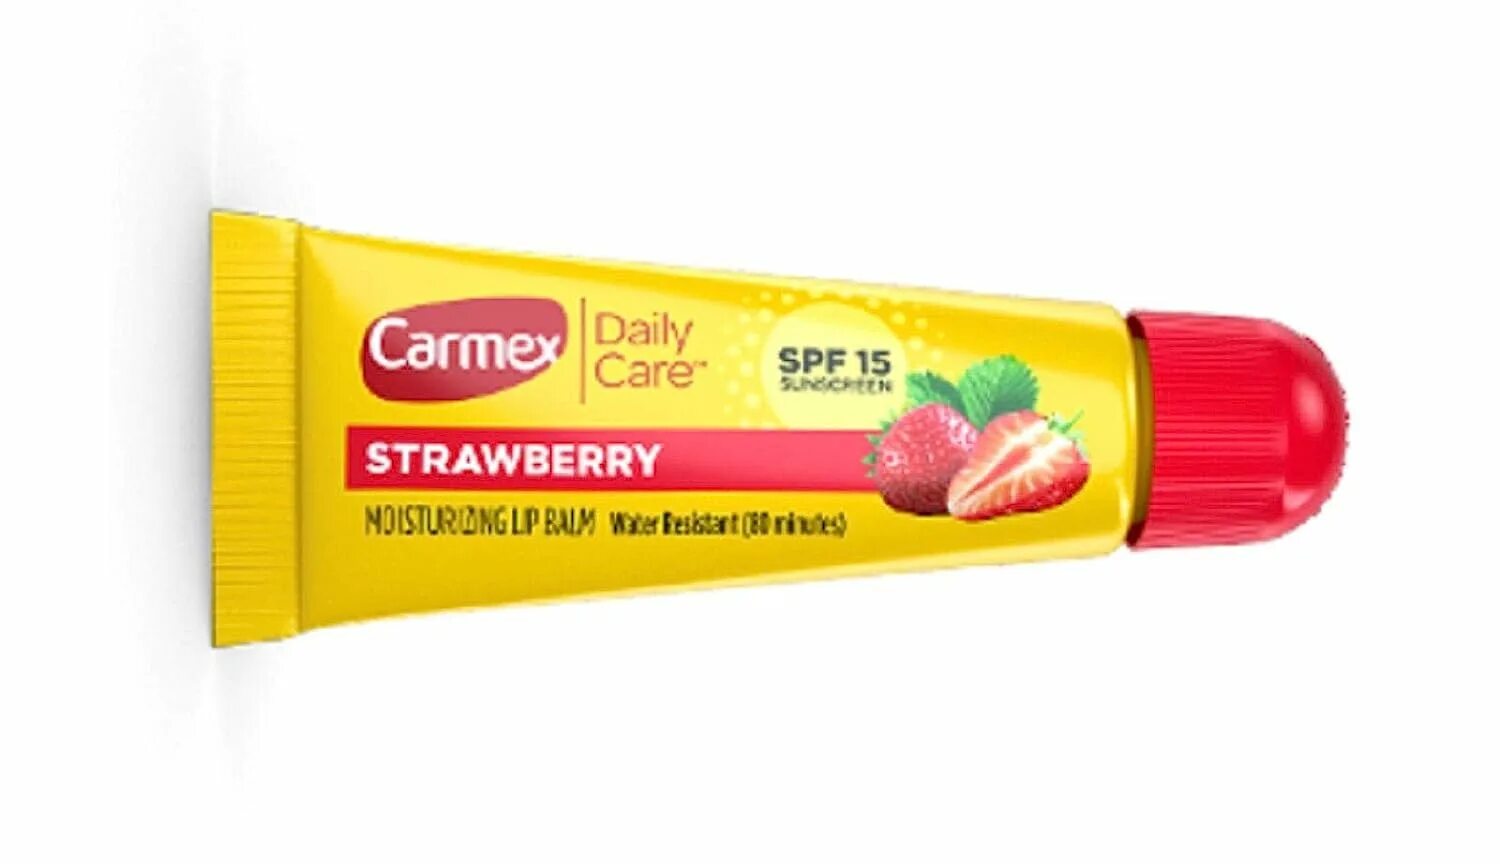 Бальзам кармекс купить. Бальзам для губ Carmex Strawberry. Carmex бальзам для губ Strawberry tube. Carmex Daily Care Strawberry. Кармекс туба клубника.